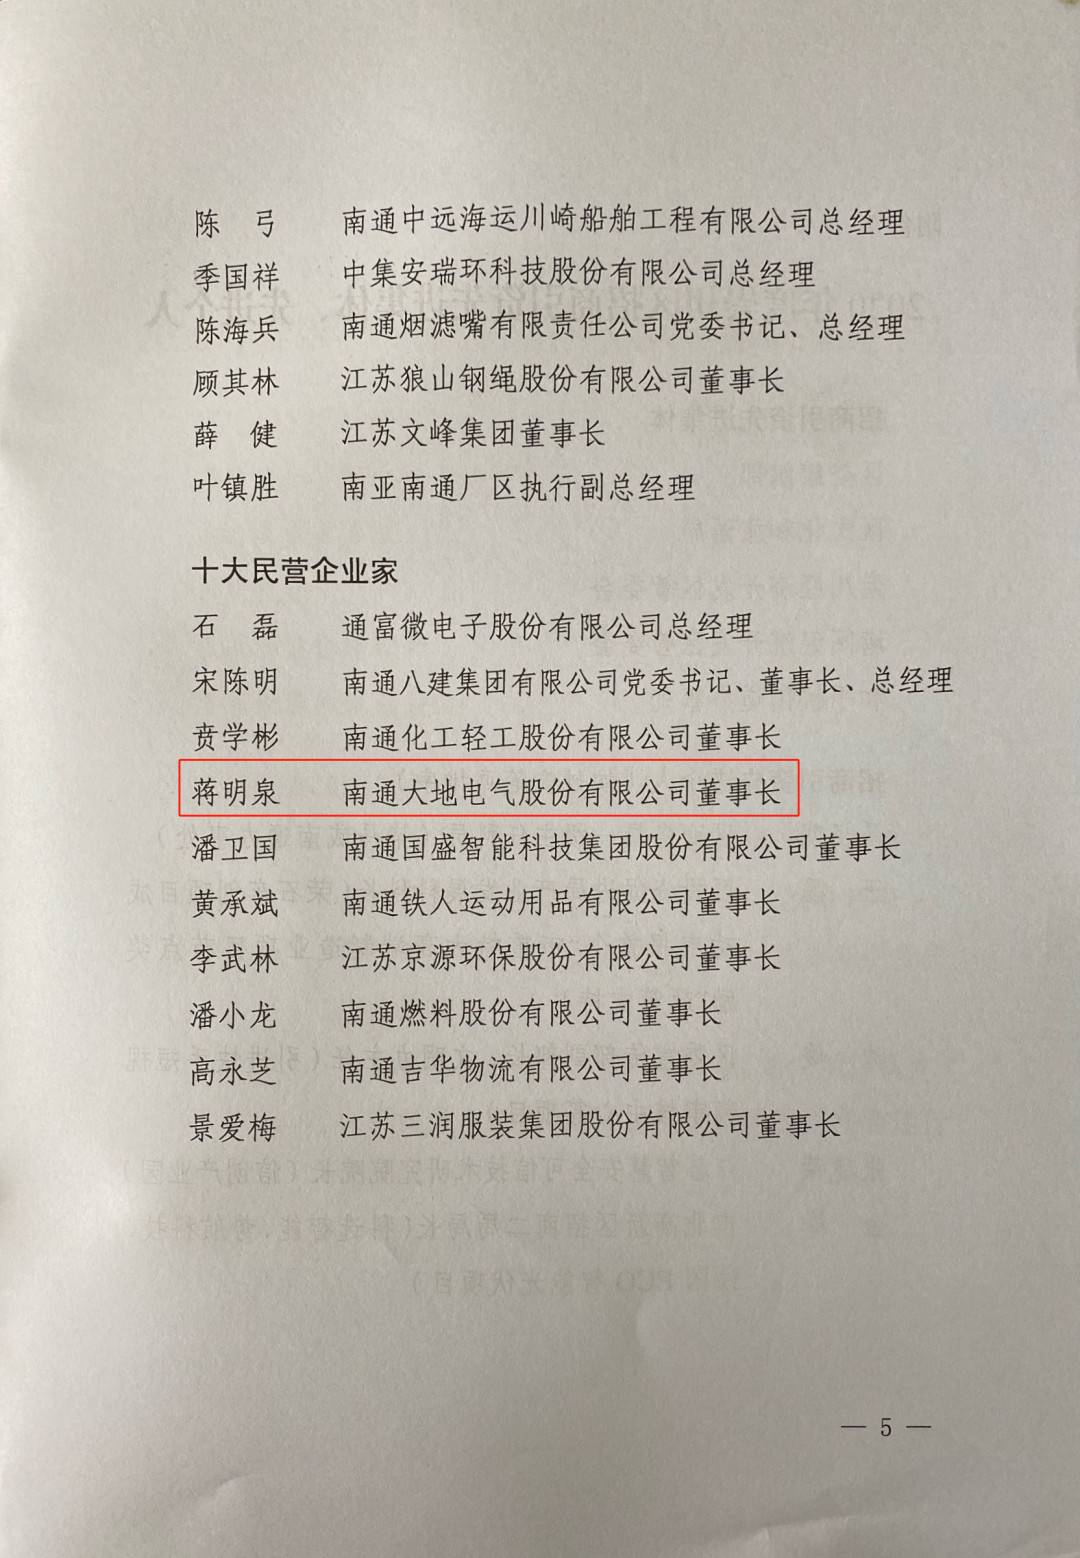 大地电气董事长蒋明泉先生荣获“2020十大民营企业家”殊荣